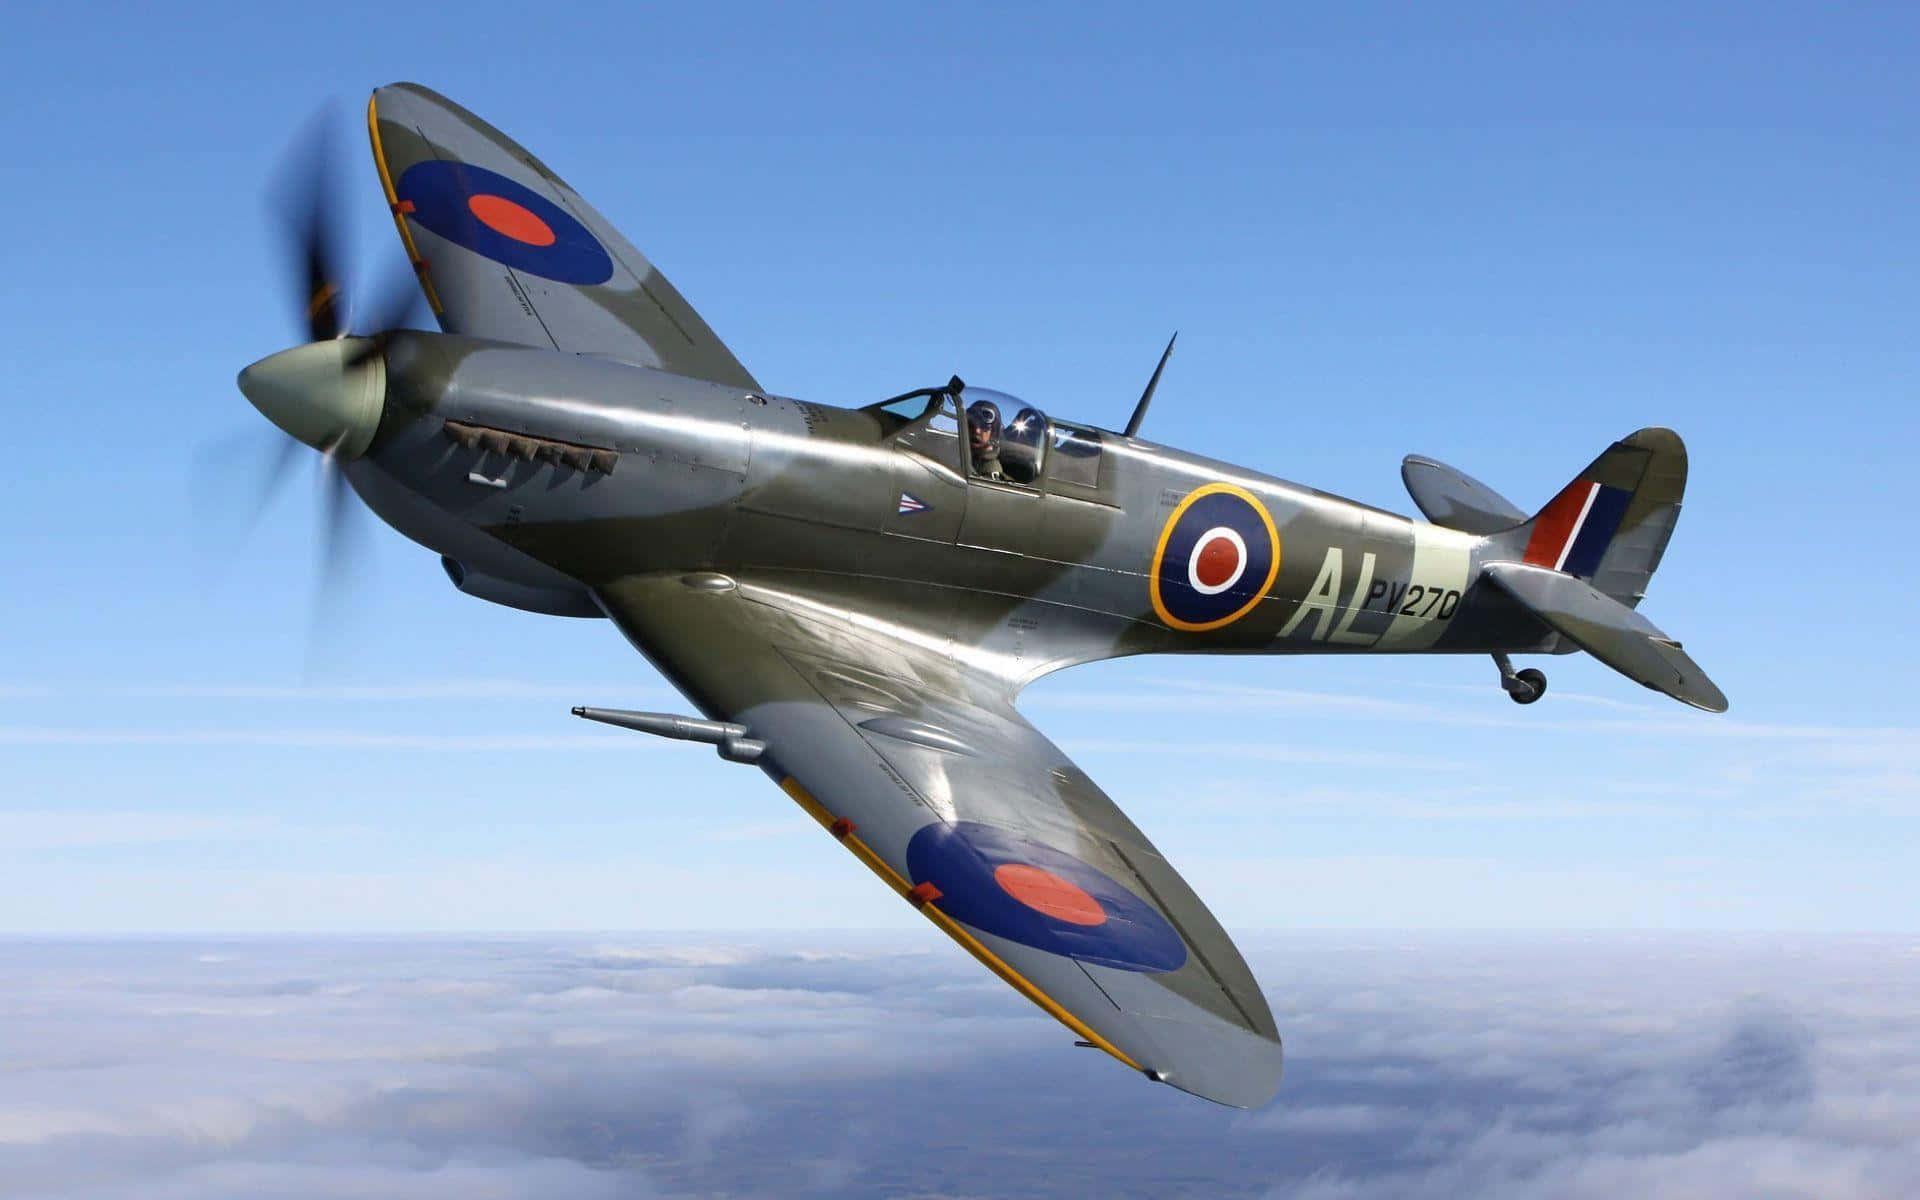 Erhebensie Sich In Einem Spitfire-kampfflugzeug In Den Himmel Wallpaper